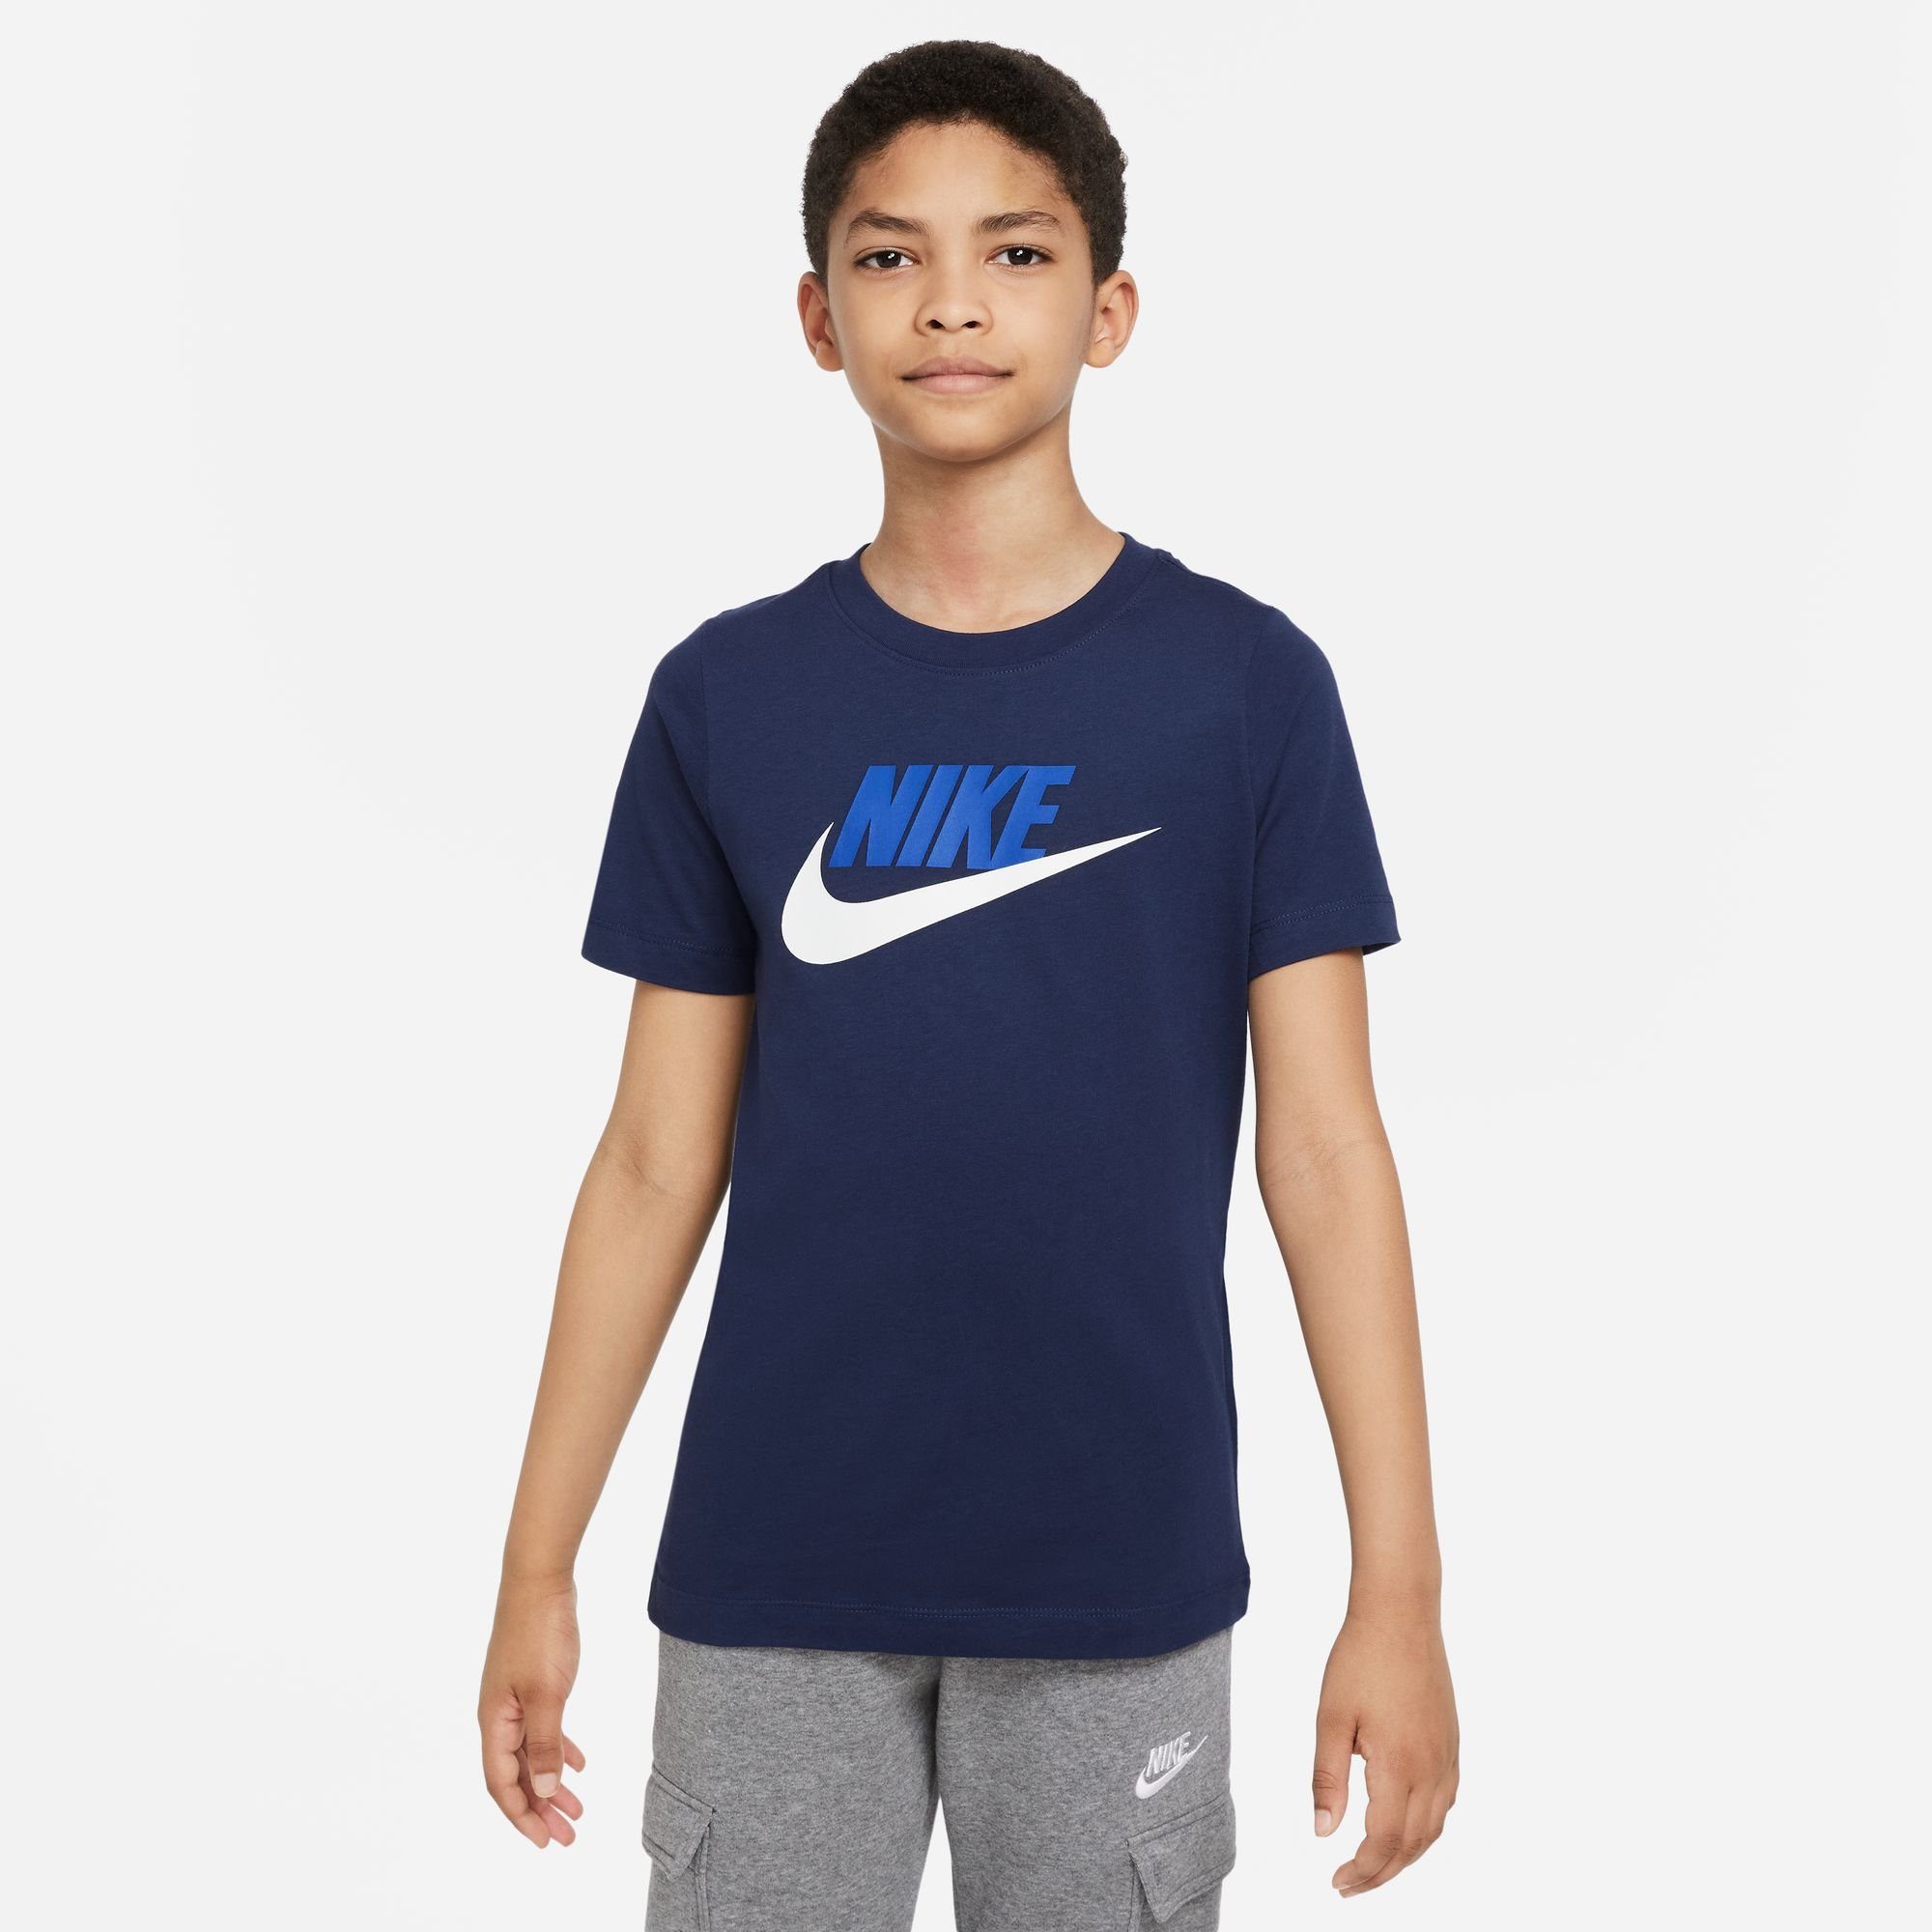 Nike T-SHIRT KIDS\' COTTON T-Shirt Sportswear BIG